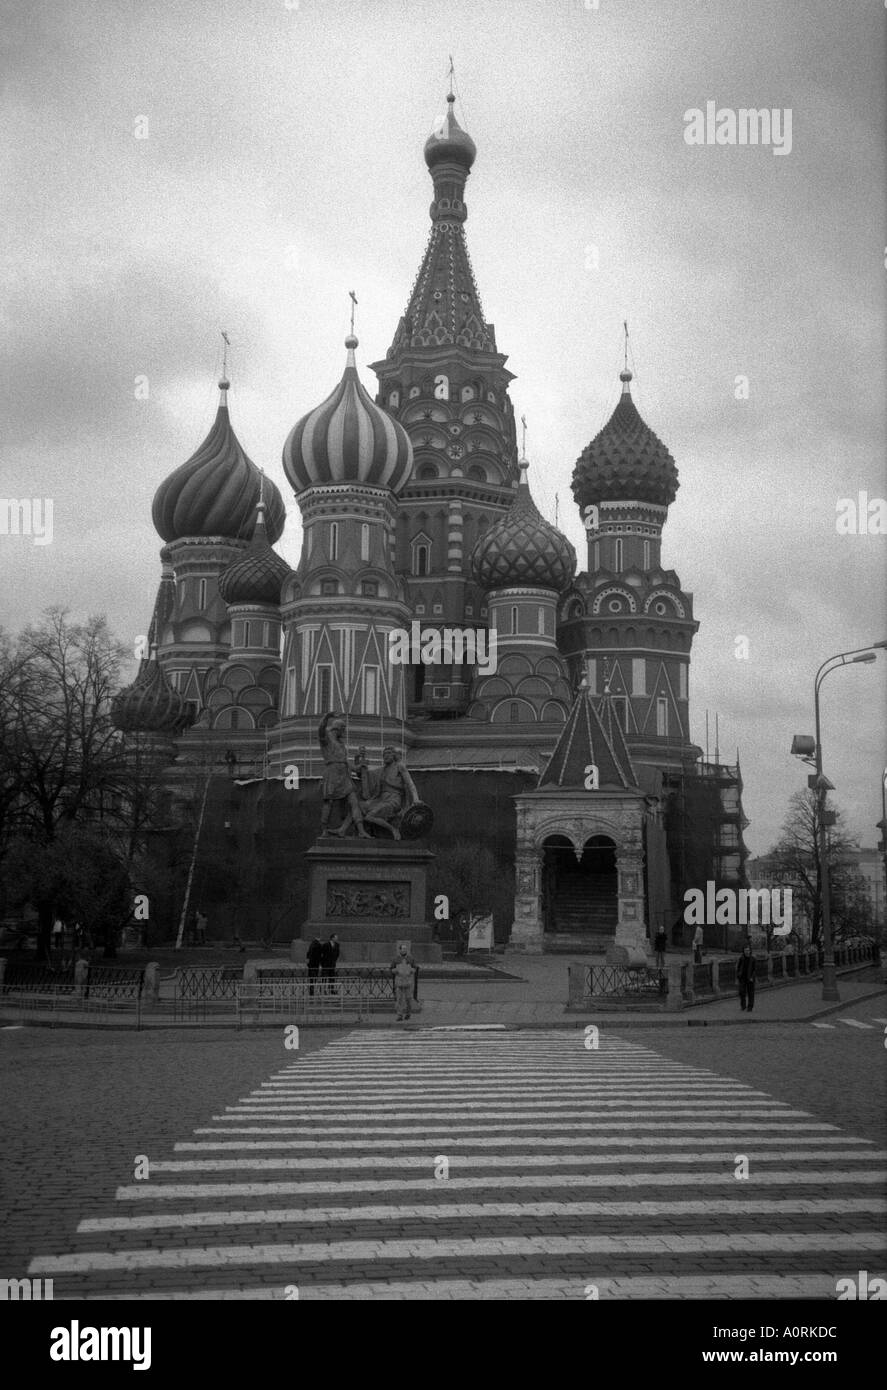 Poscharski & Minin Denkmal Kathedrale des heiligen Basilius der seligen Roter Platz Moskau Russland Russische Föderation Eurasien Stockfoto